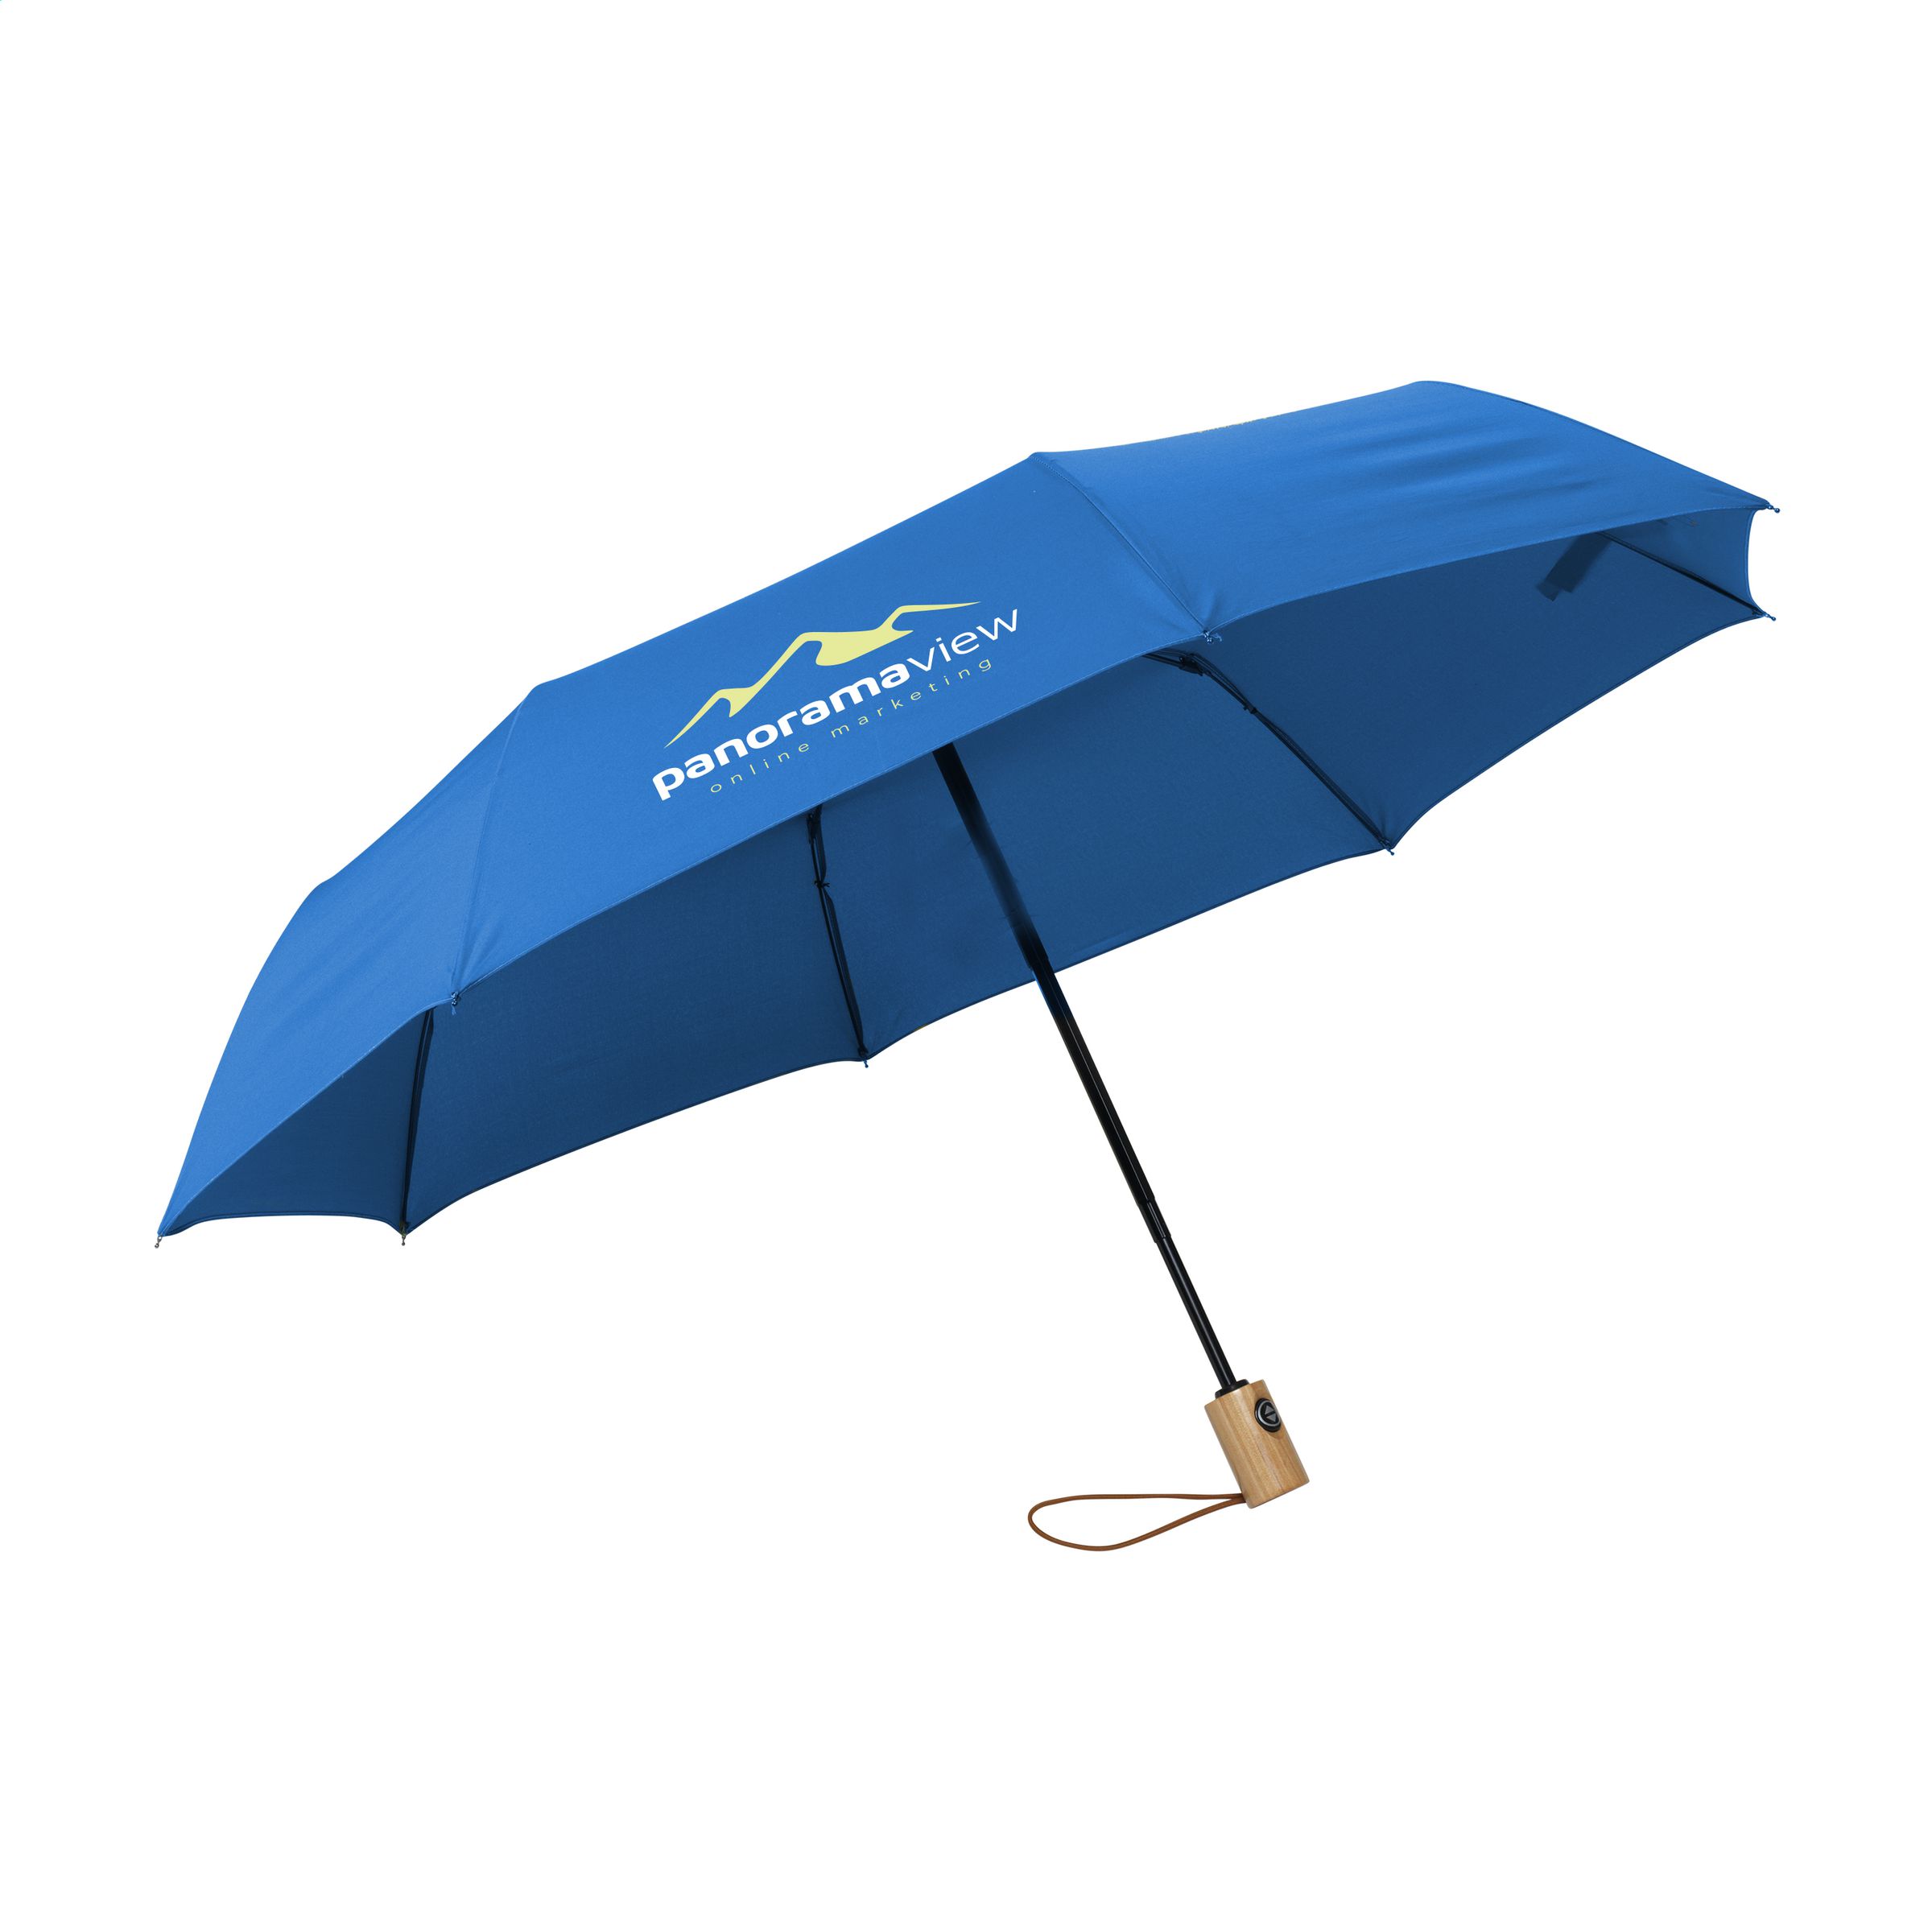 Parapluie pliable avec mécanisme d'ouverture et de fermeture automatique - Château-Renard - Zaprinta France